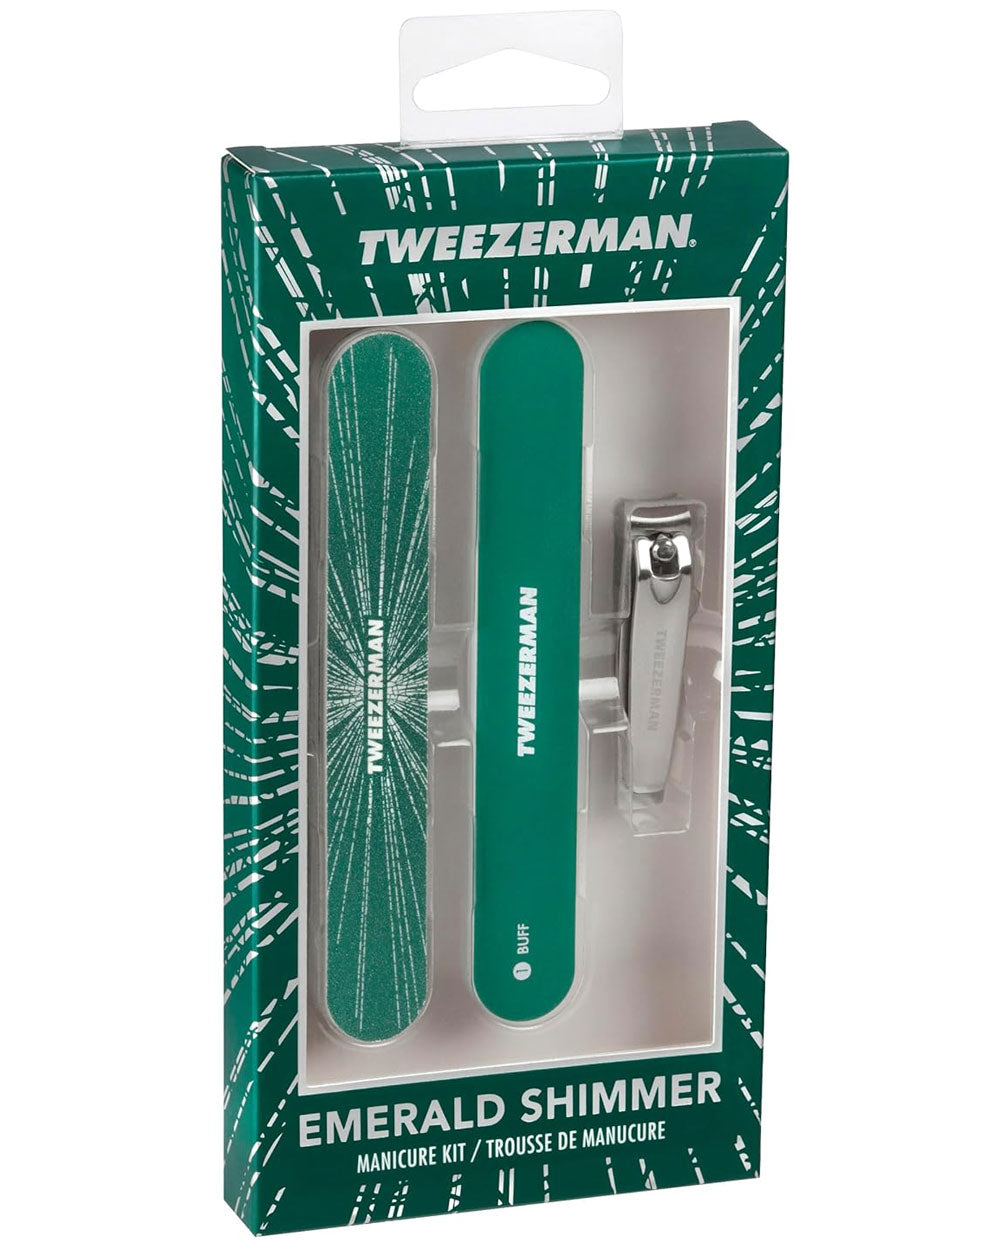 Emerald Shimmer Manicure Set